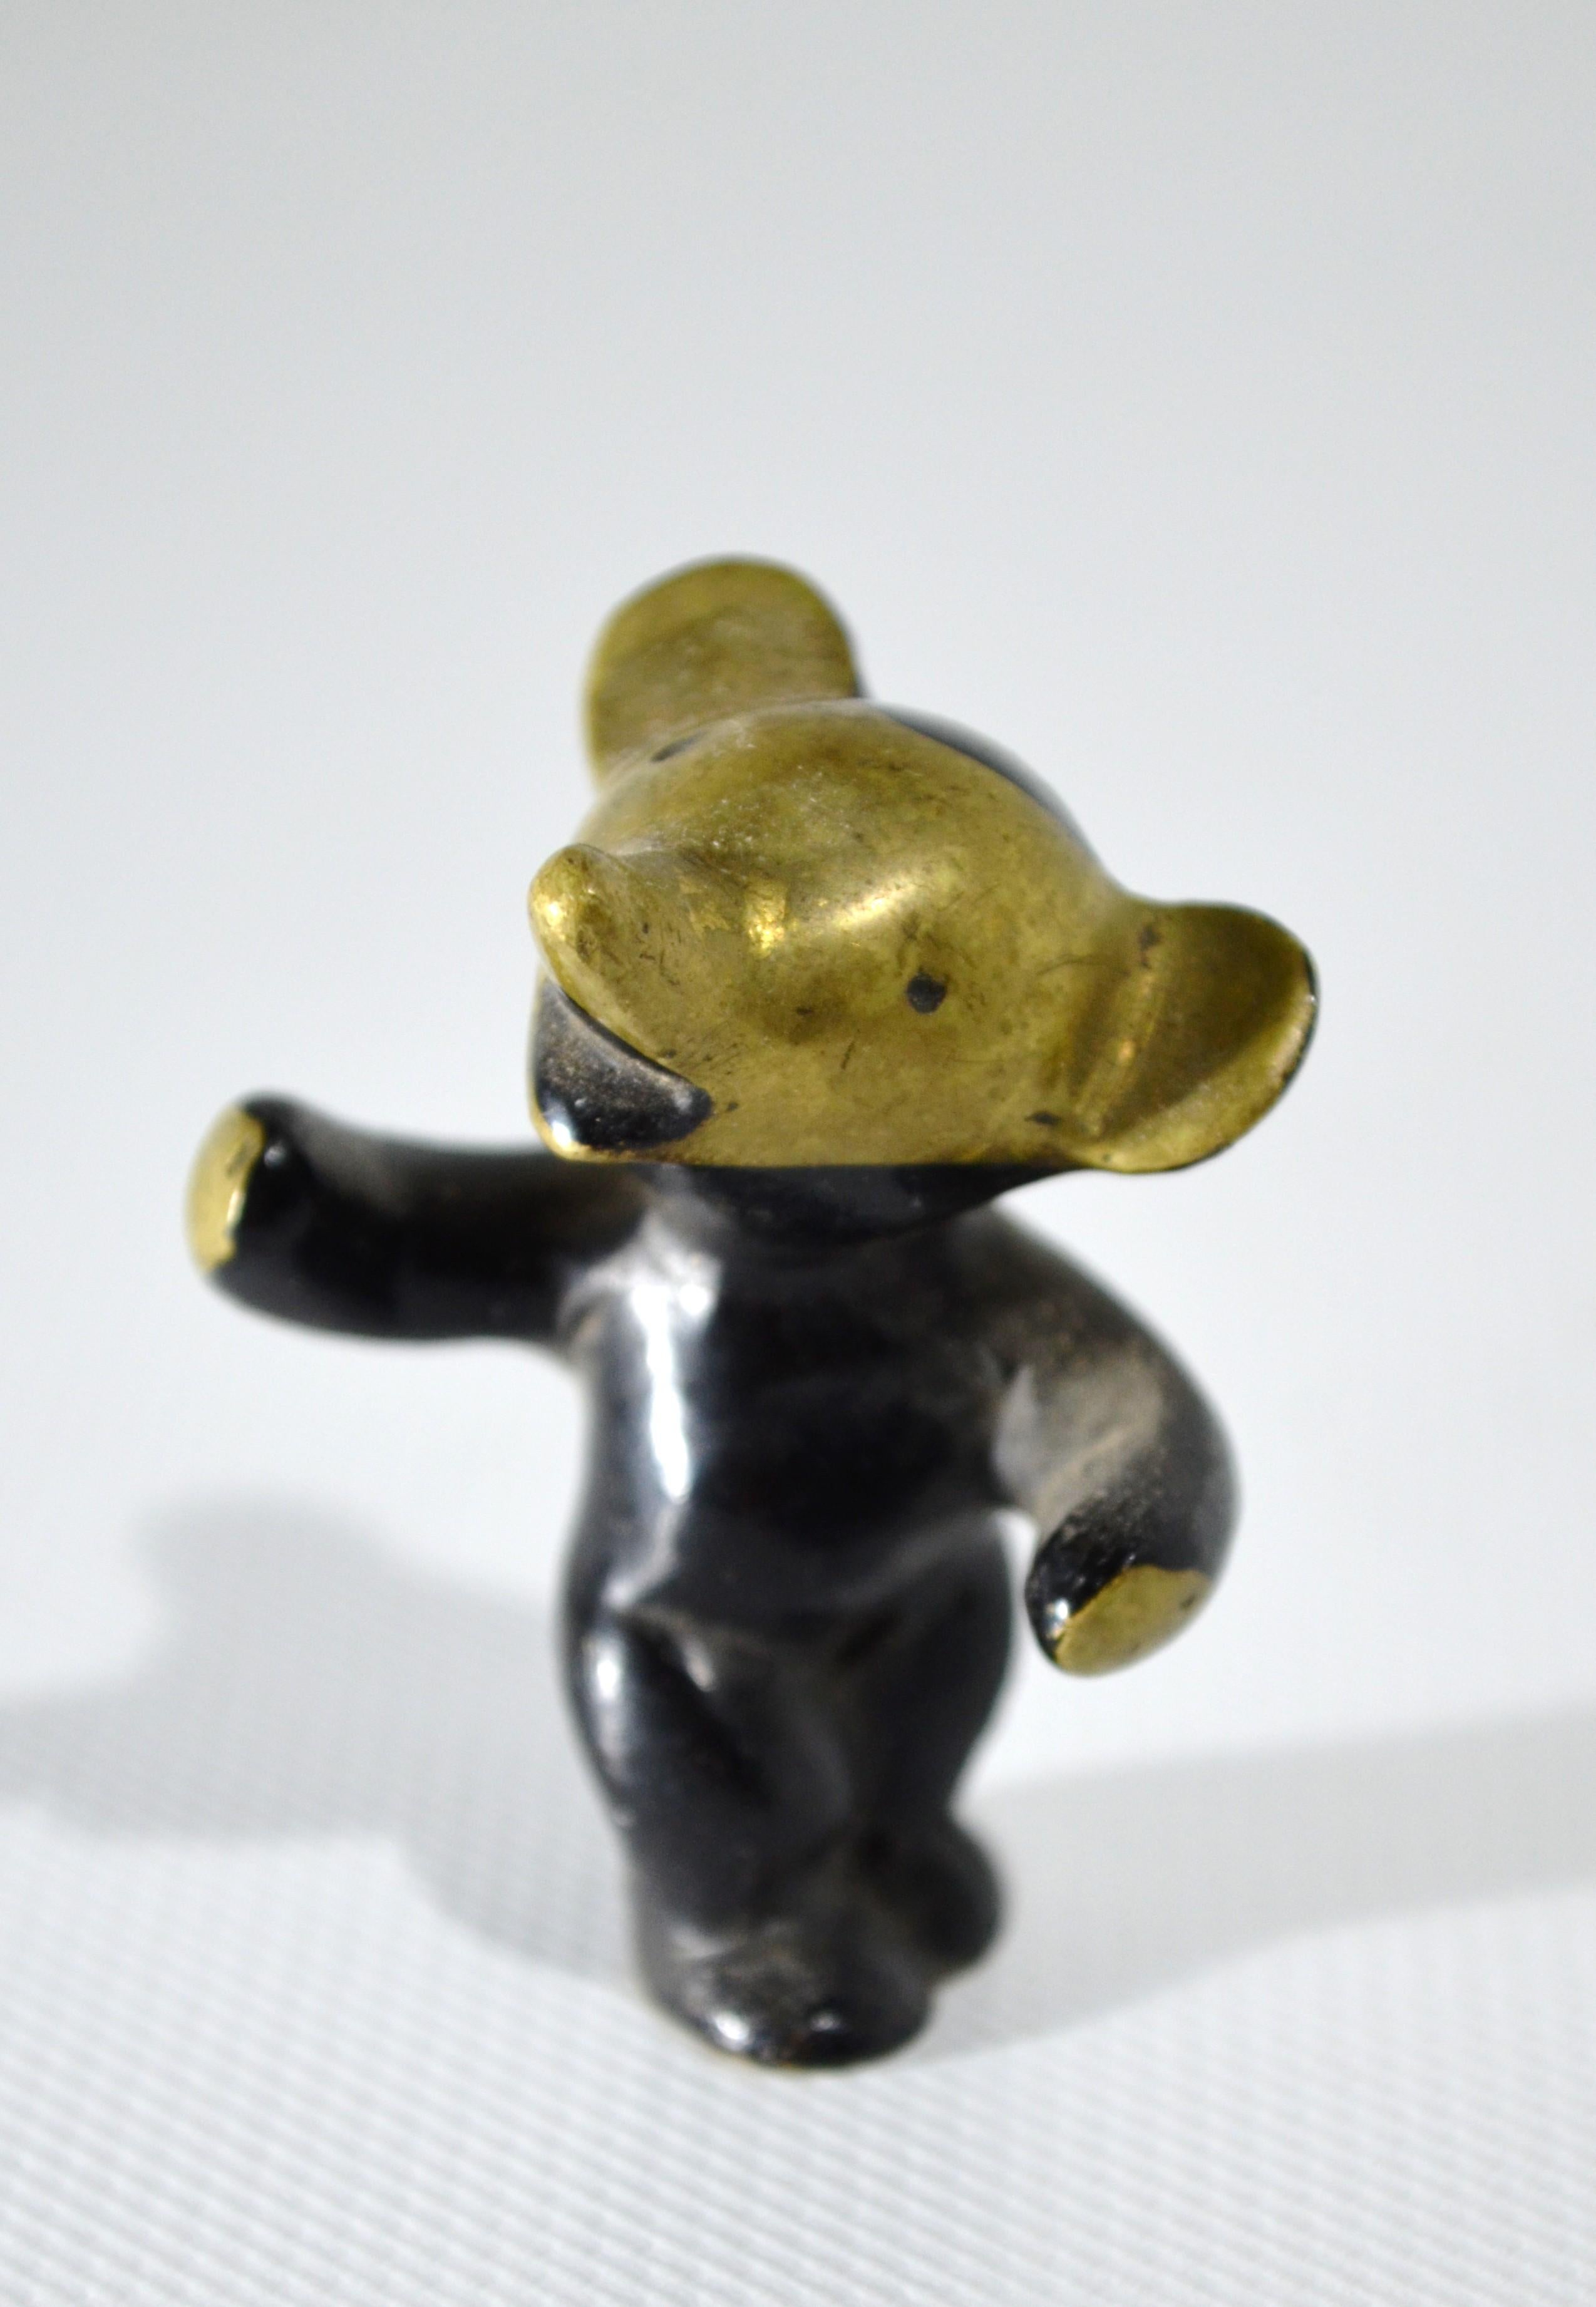 Schöner und charmanter kleiner Teddybär in schwarz-goldener Linie von dem berühmten Designer
Walter Bosse (1904 - 1979)
Schöne originale Patina aus der Mitte des 20. Jahrhunderts.

Höhe: 50 mm